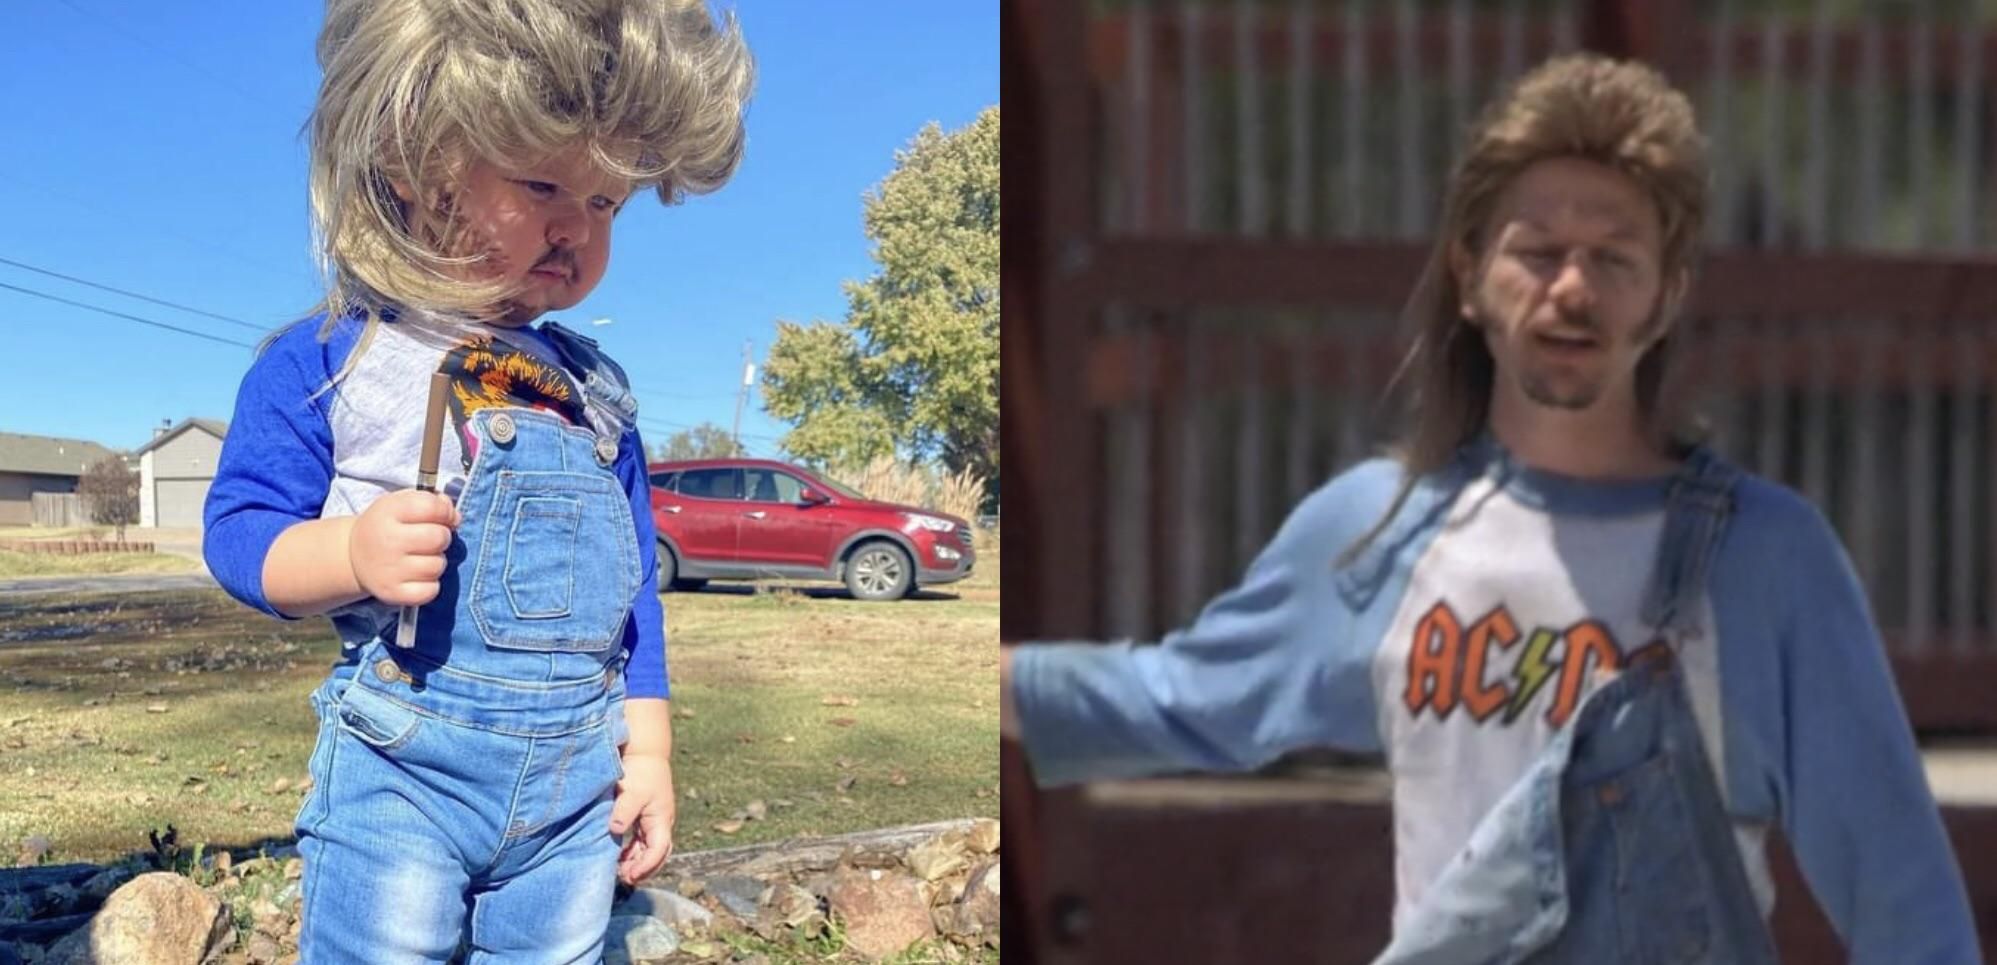 I dressed my daughter up as Joe Dirt